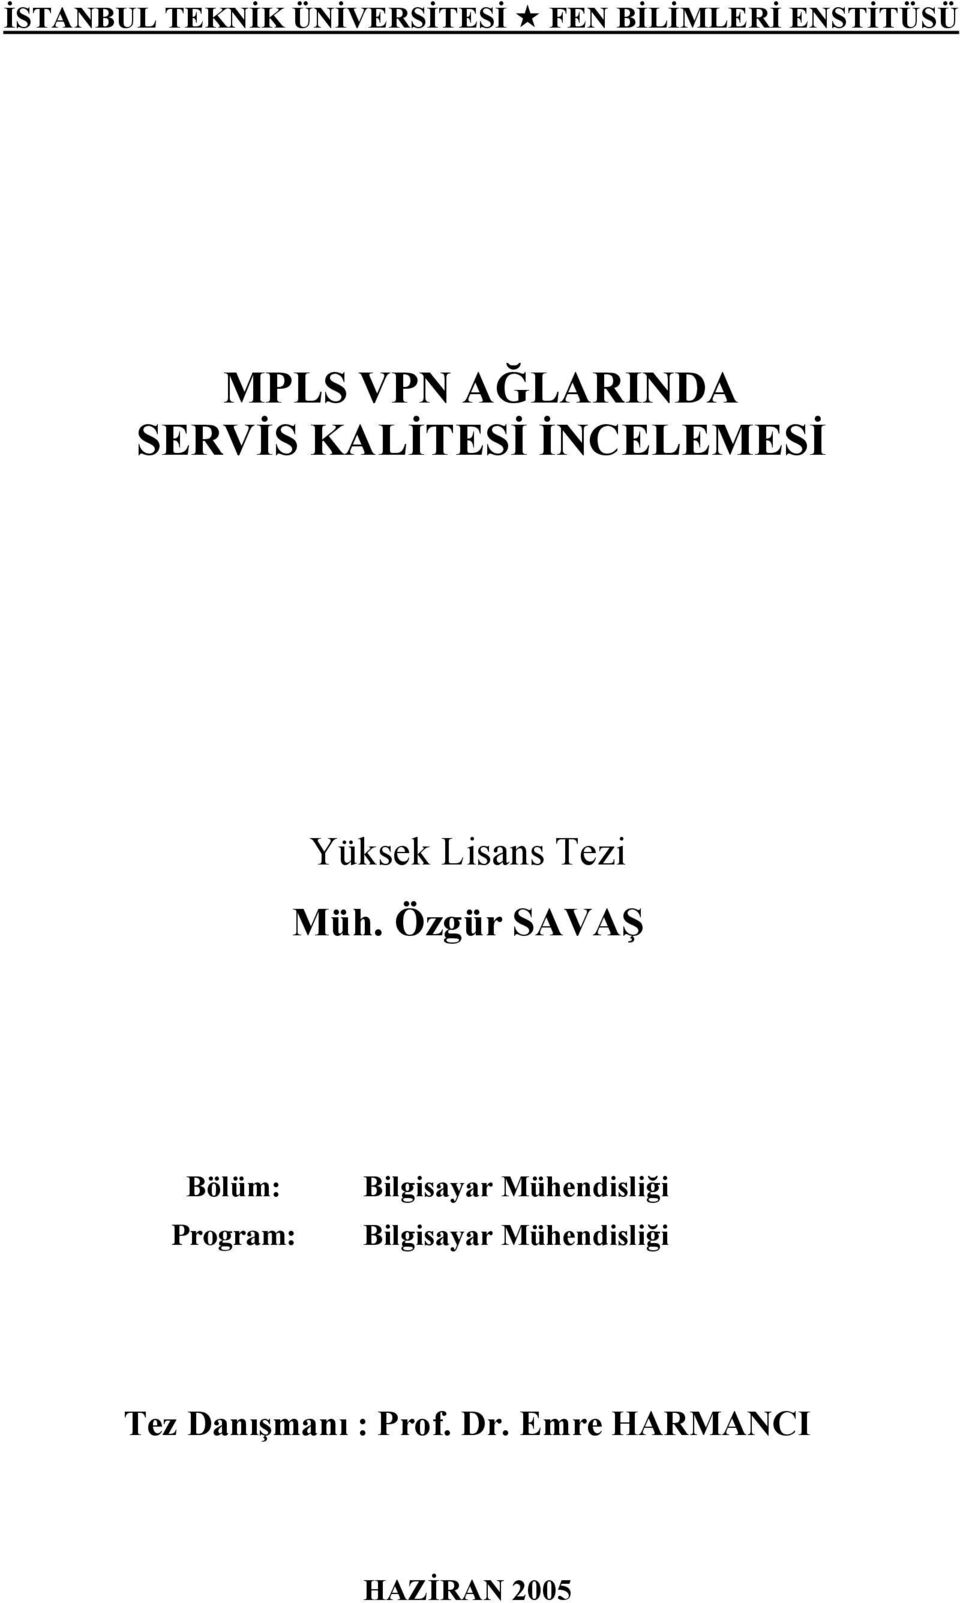 Özgür SAVAġ Bölüm: Program: Bilgisayar Mühendisliği Bilgisayar